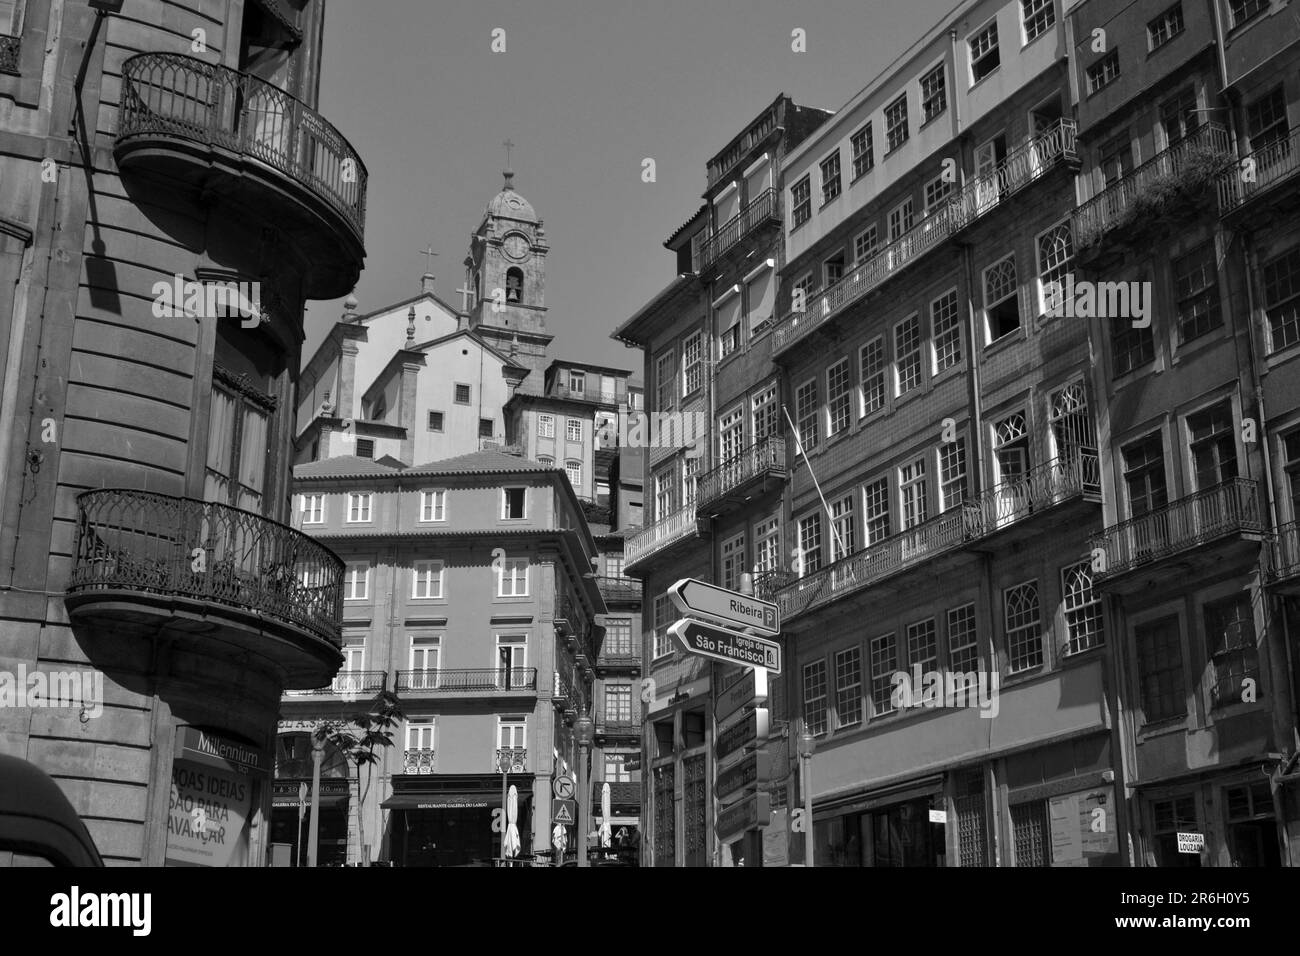 Plusieurs façades de Porto, août 2015 17th. Le centre-ville de Porto a l'aspect de l'architecture médiévale. Banque D'Images